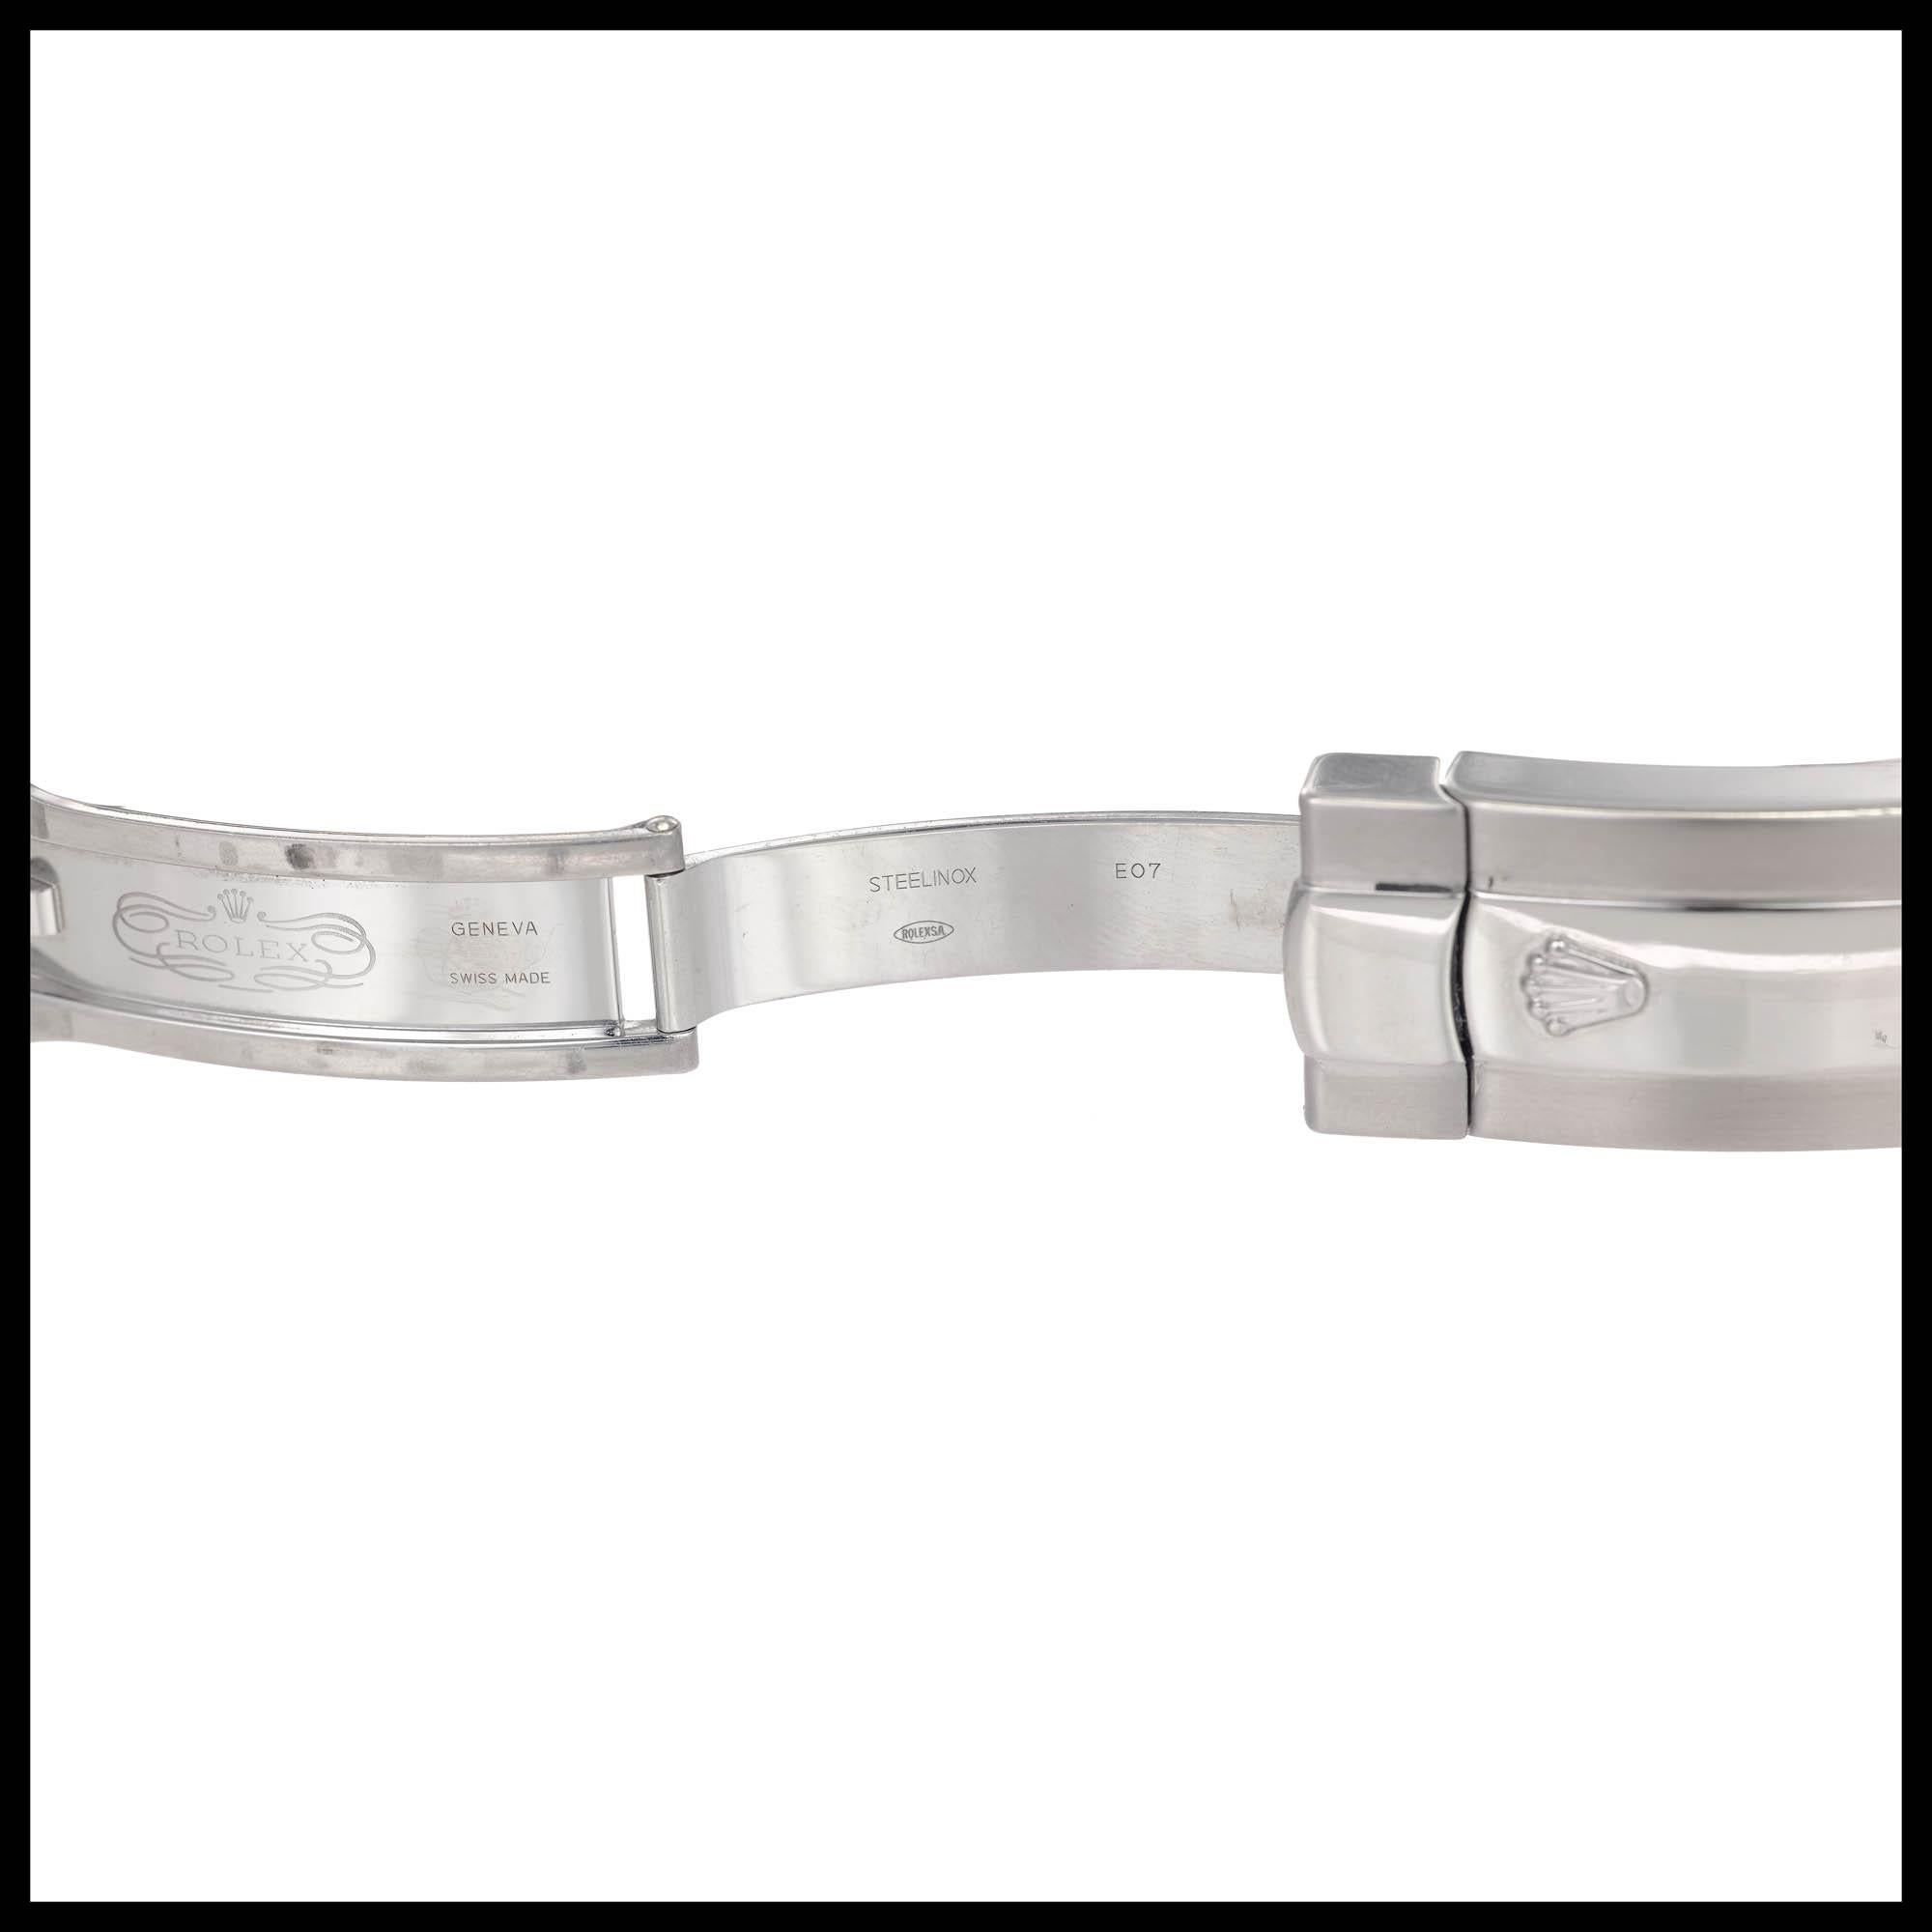 Rolex Stainless Steel Date Just Wristwatch Ref 116200 1